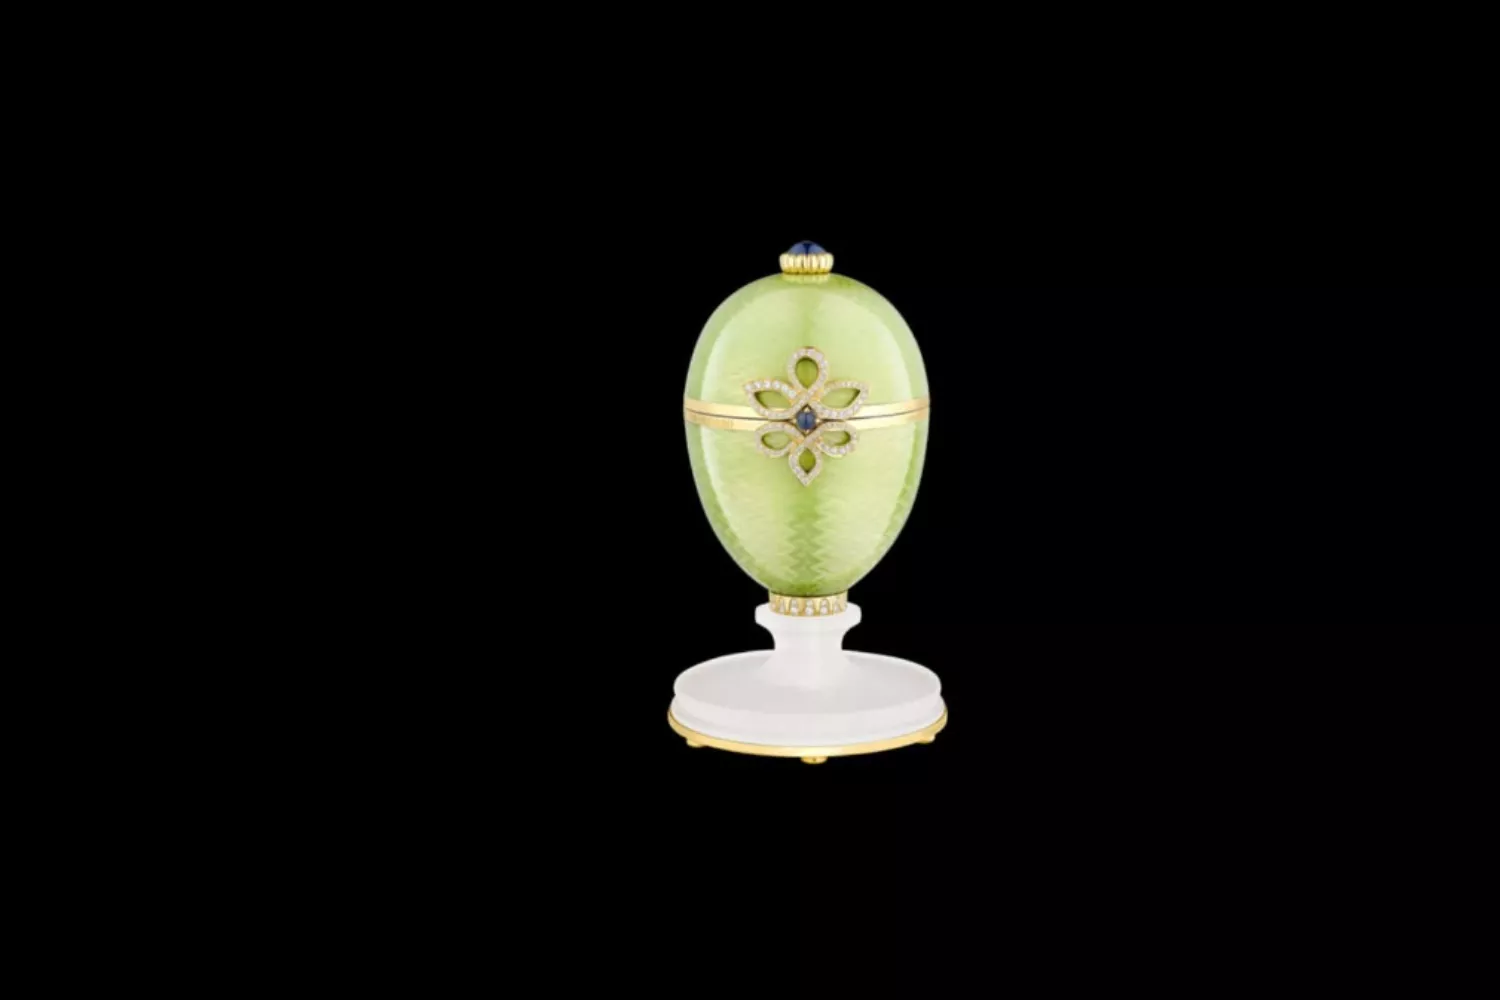 Huevo de Fabergé / CRAFT IRISH WHISKY